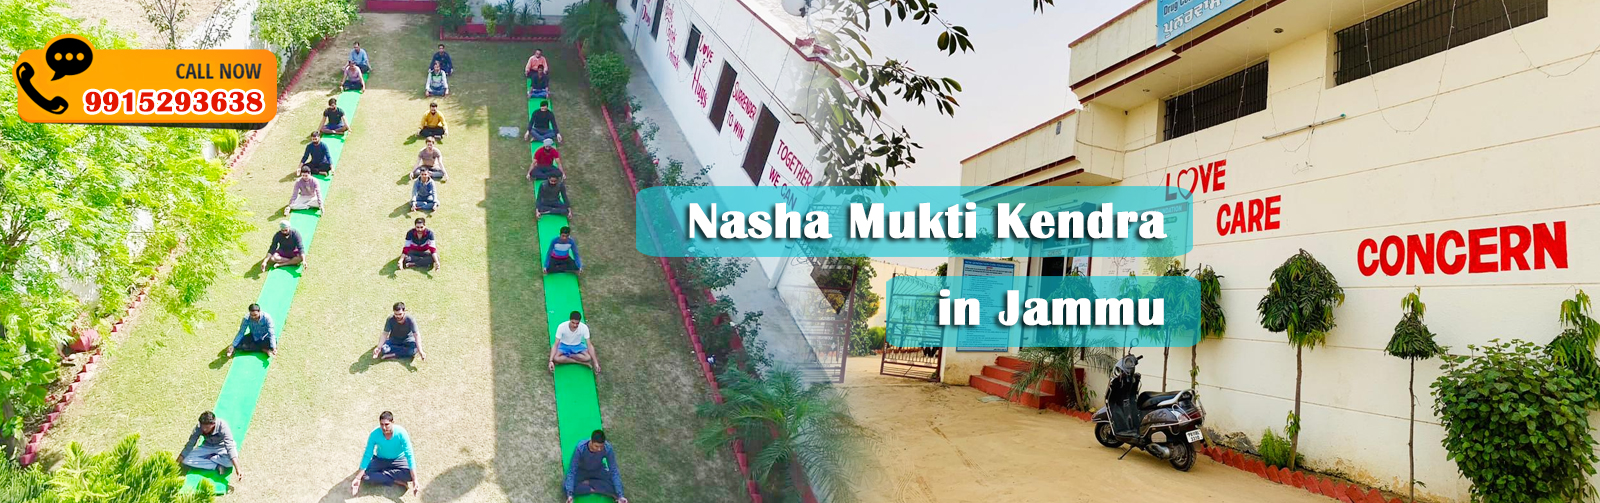 Nasha Mukti Kendra in Jammu